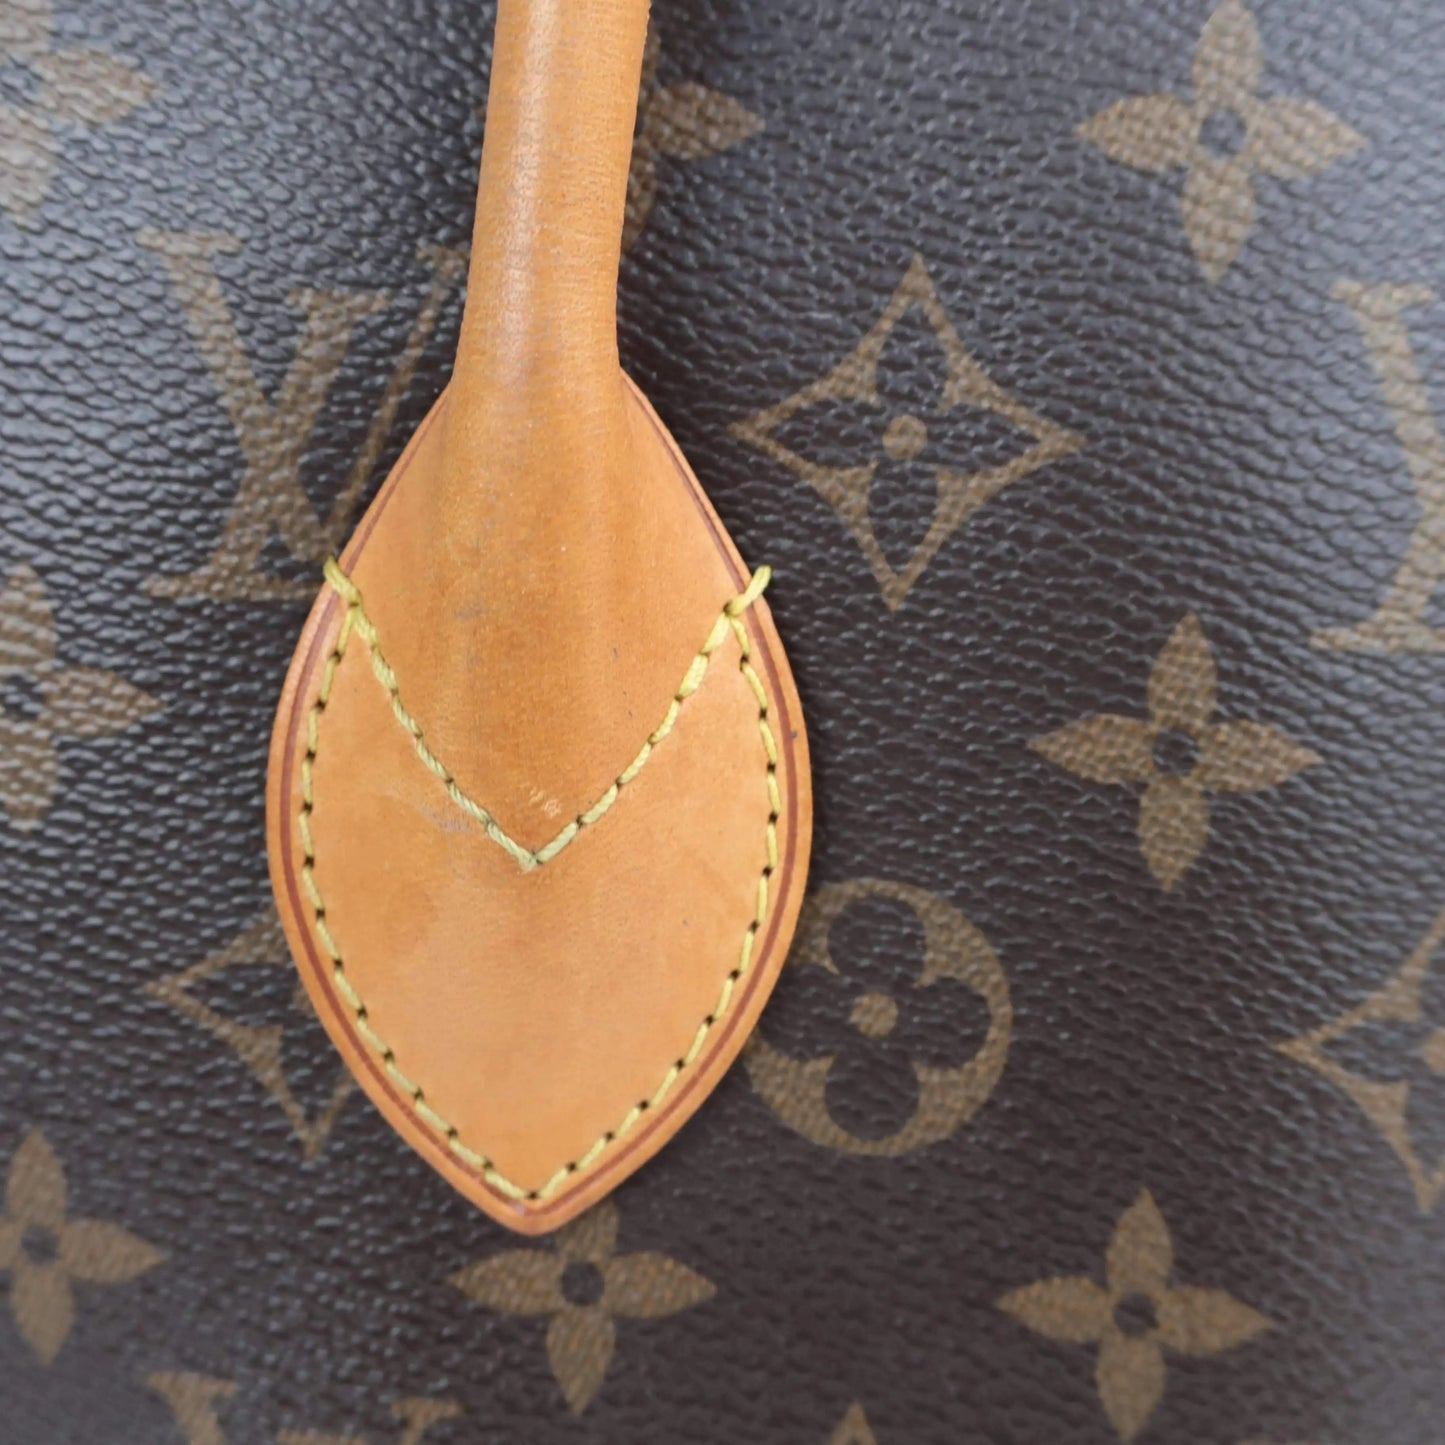 Load image into Gallery viewer, Louis Vuitton Louis Vuitton Monogram Fetish Lockit Bag LVBagaholic
